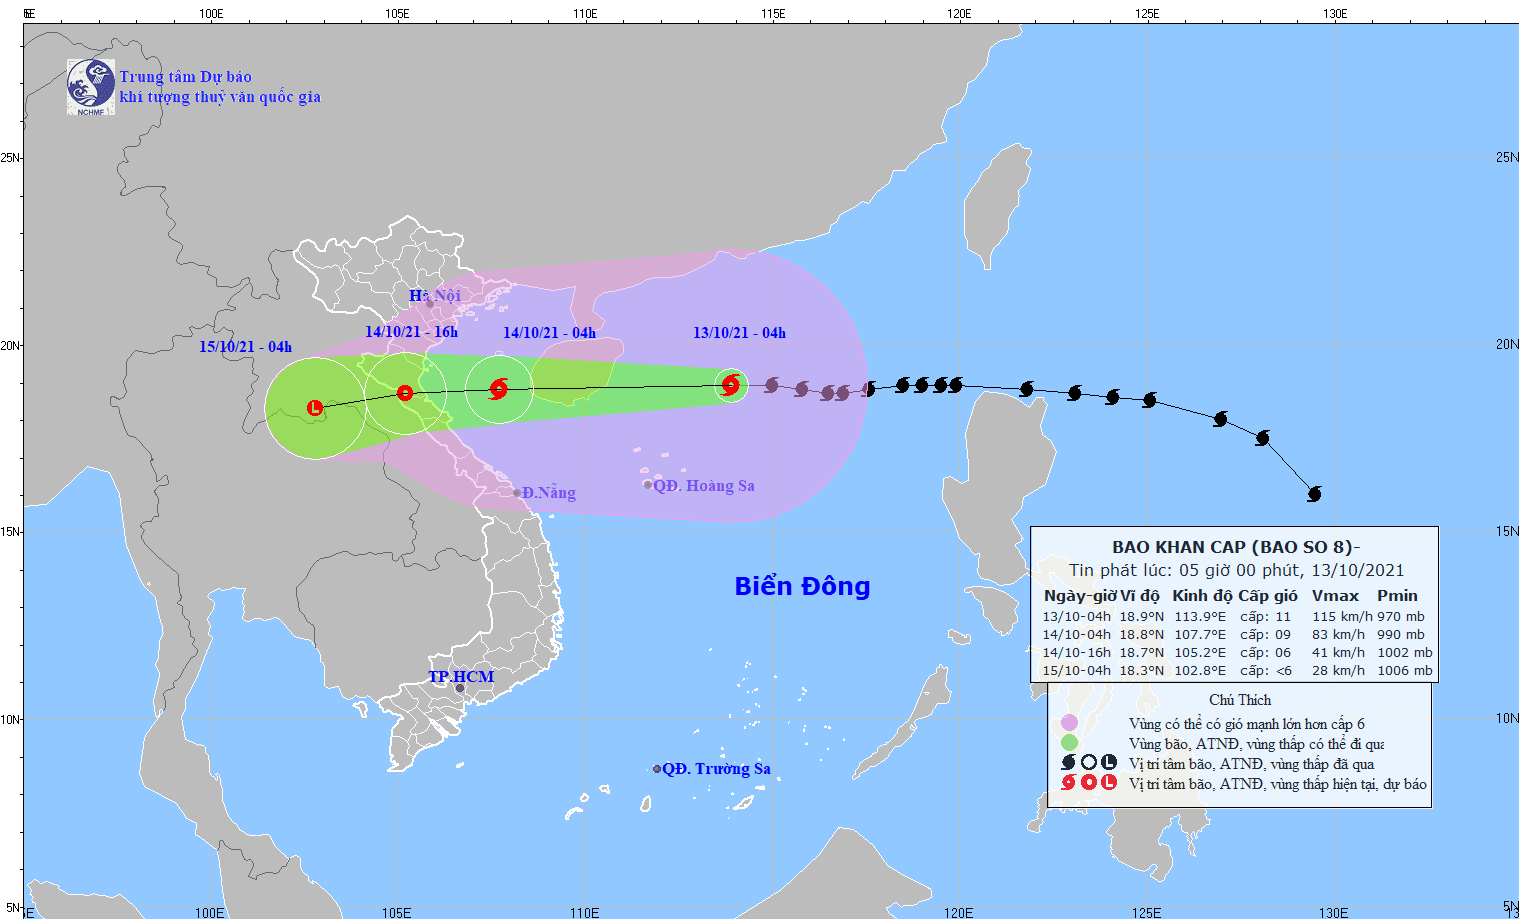 Bão số 8 cách quần đảo Hoàng Sa 270km, giảm cấp khi vào bờ biển Thanh Hóa - Quảng Bình